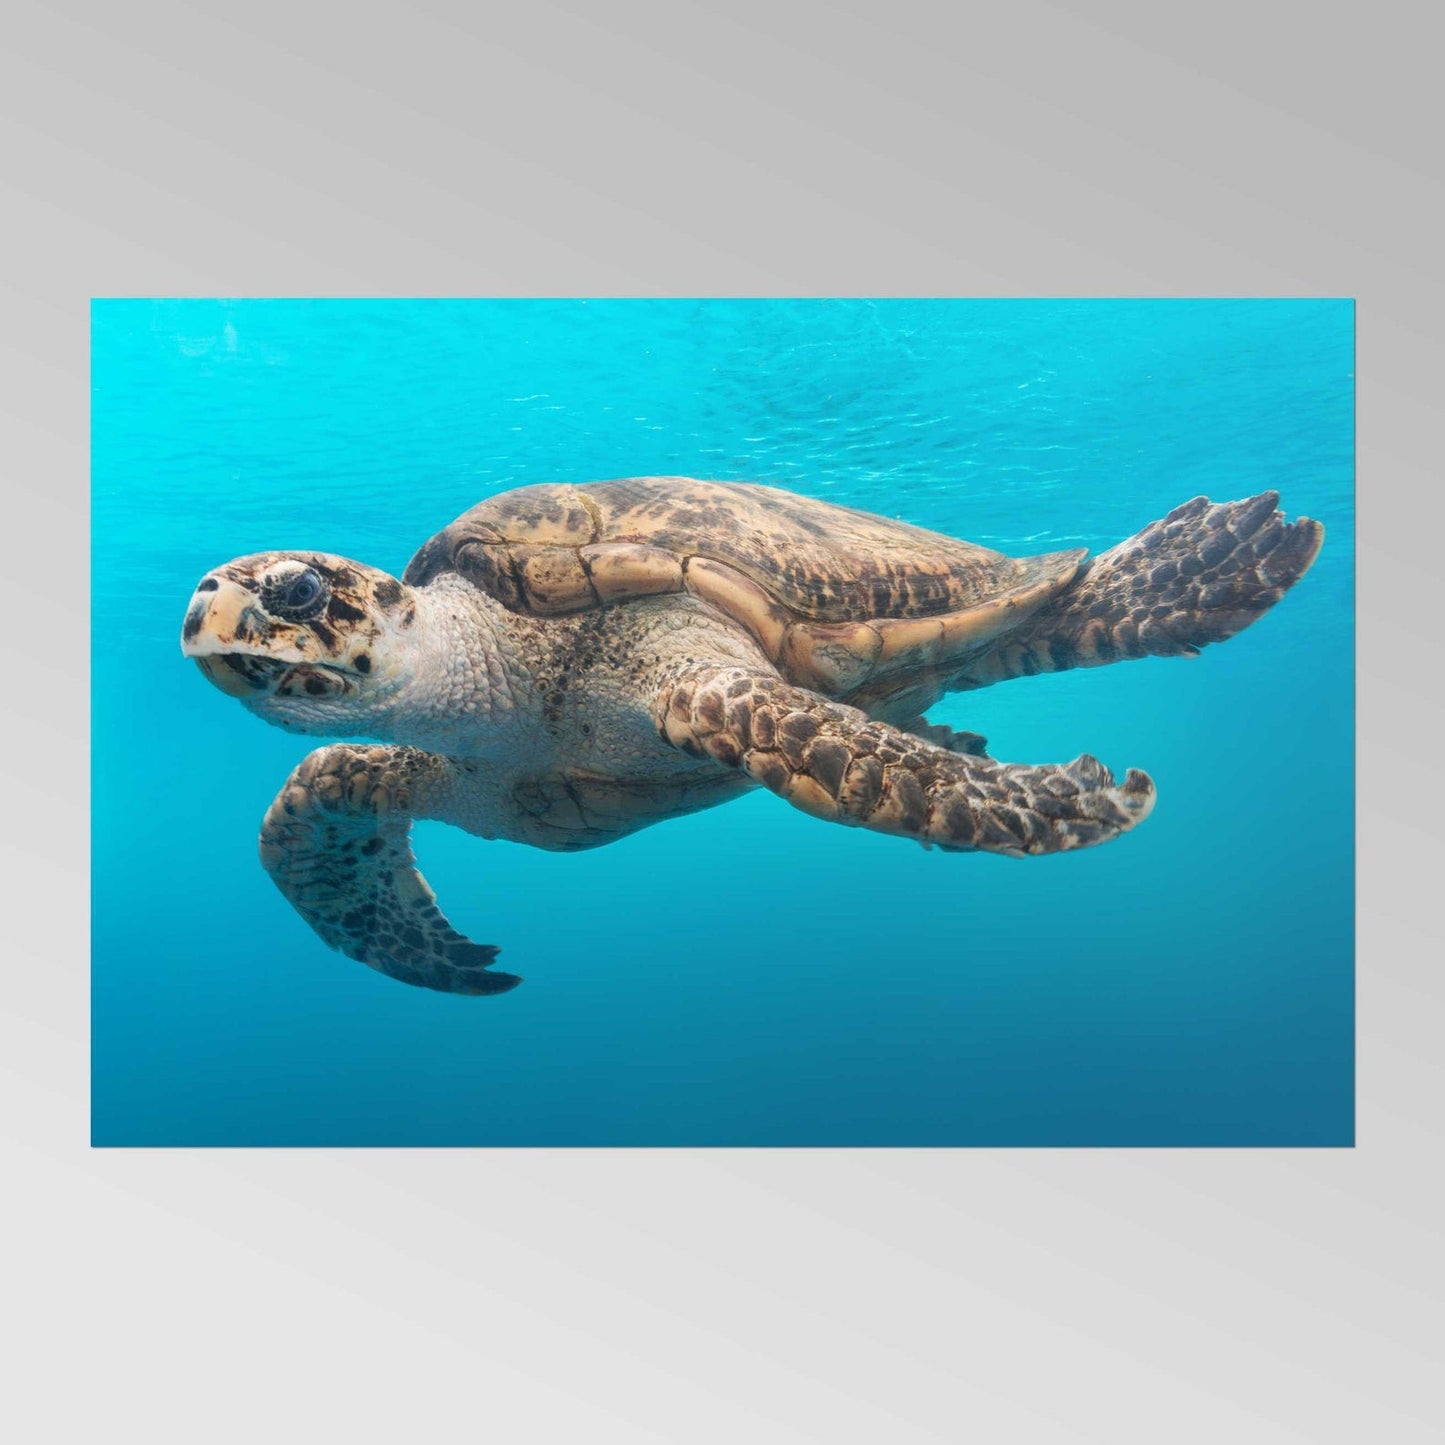 CAROL M. HIGHSMITH – Eine Schildkröte gleitet durch das Wasser